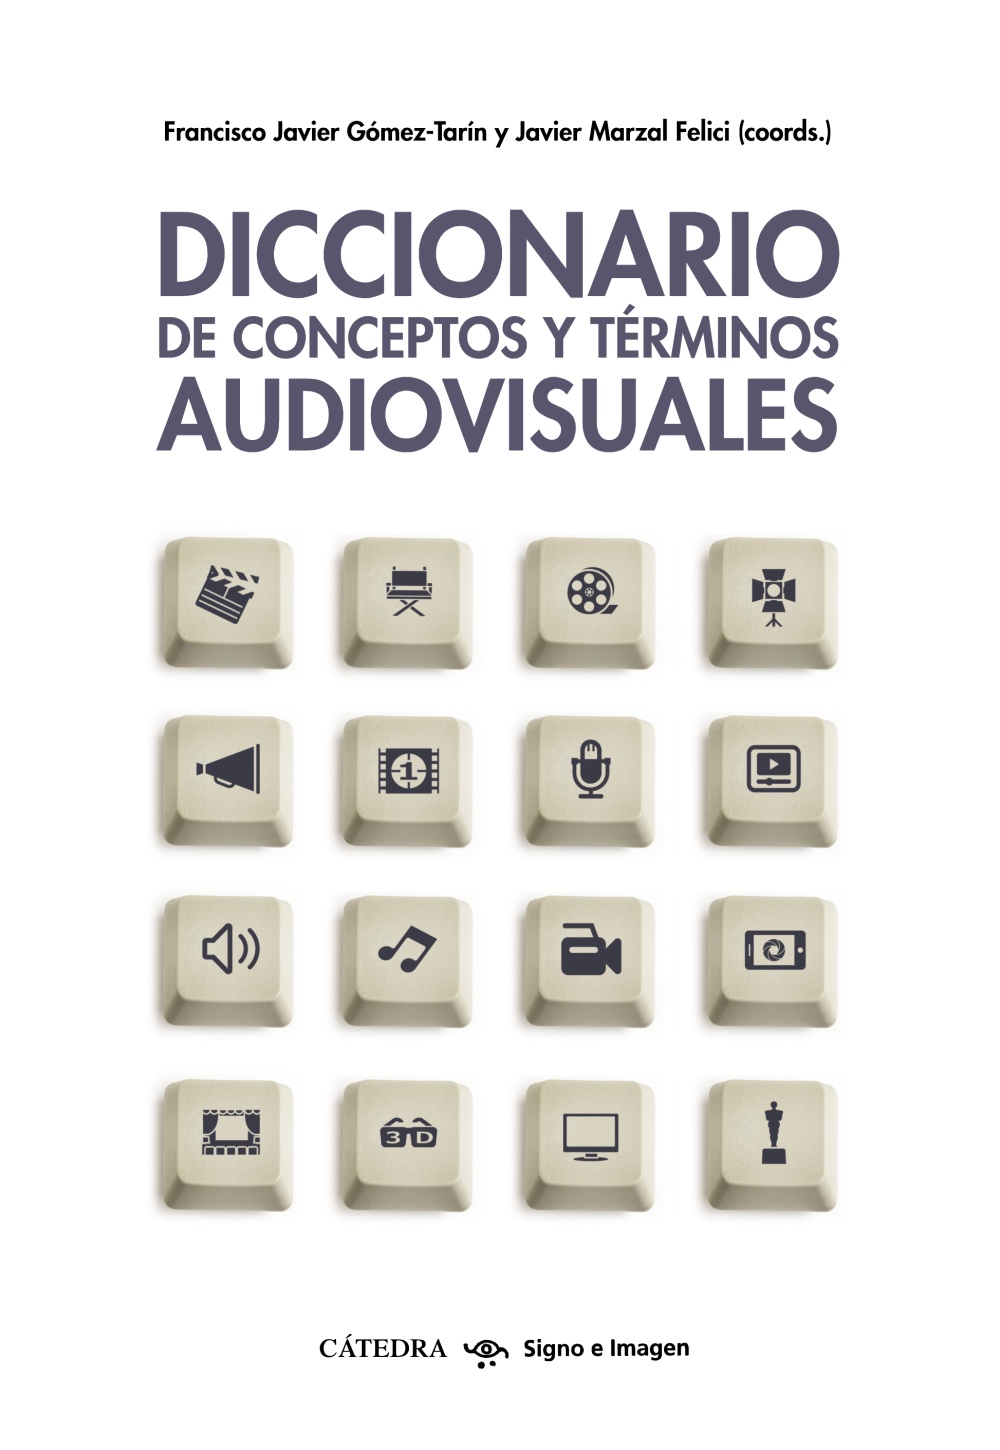 Imagen de portada del libro Diccionario de conceptos y términos audiovisuales